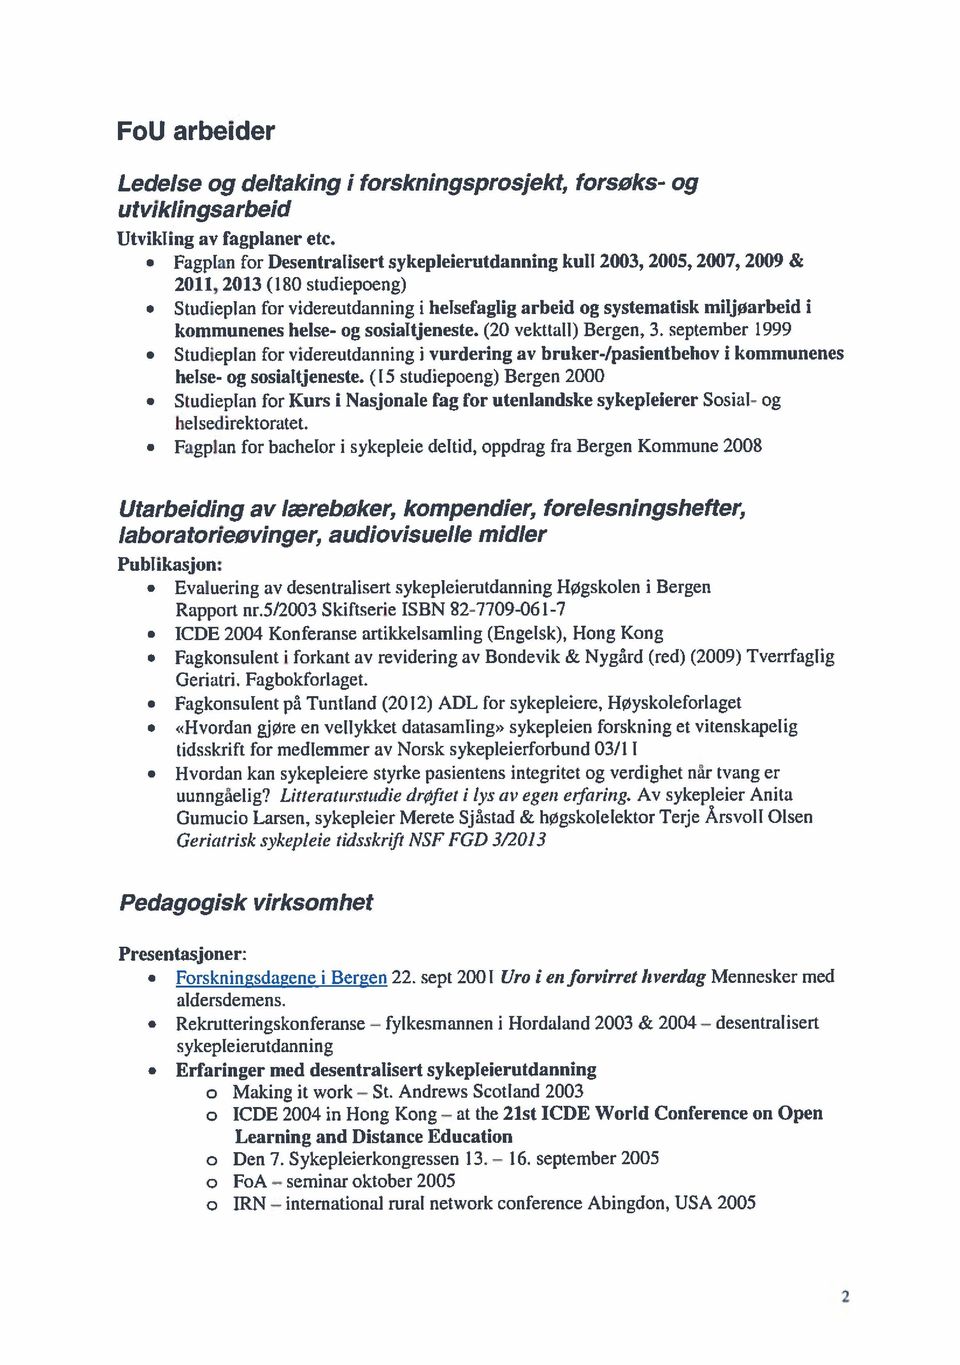 helse- og sosialtjeneste. (20 vekttall) Bergen, 3. september 1999 Studieplan for videreutdanning i vurdering av bruker-/pasientbehov i kommunenes helse- og sosialtjeneste.